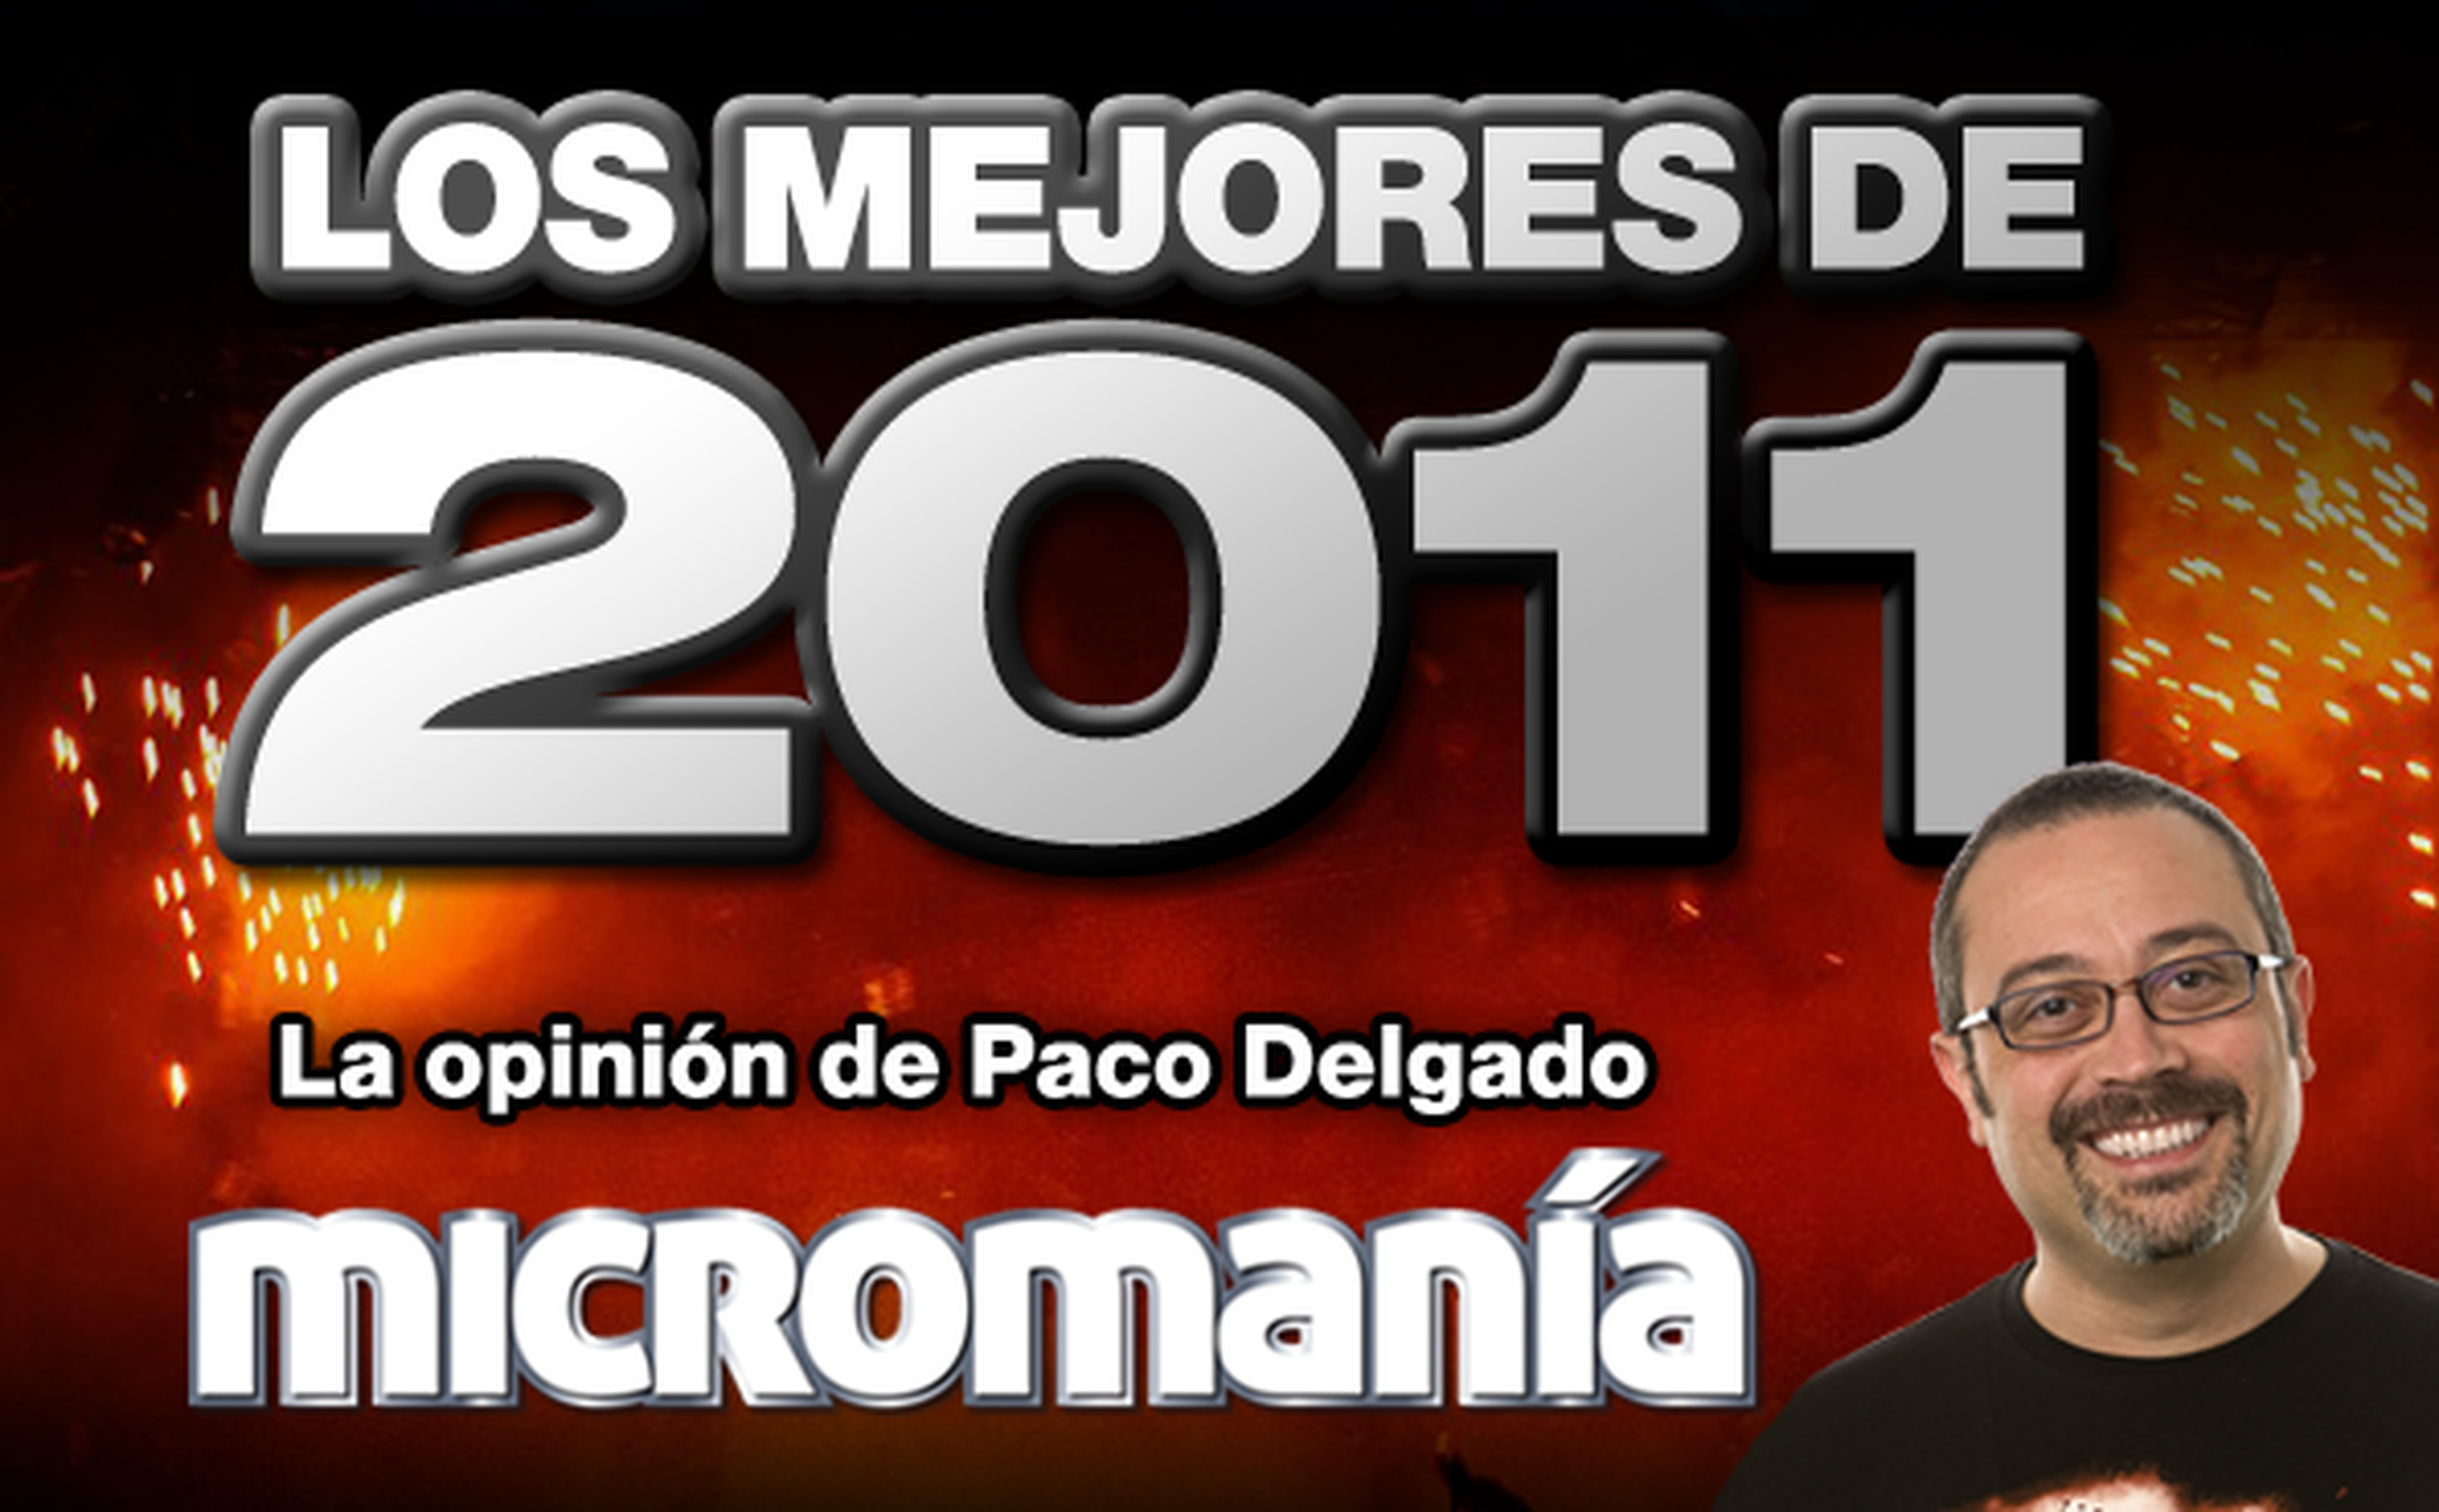 Los mejores de 2011: Paco Delgado